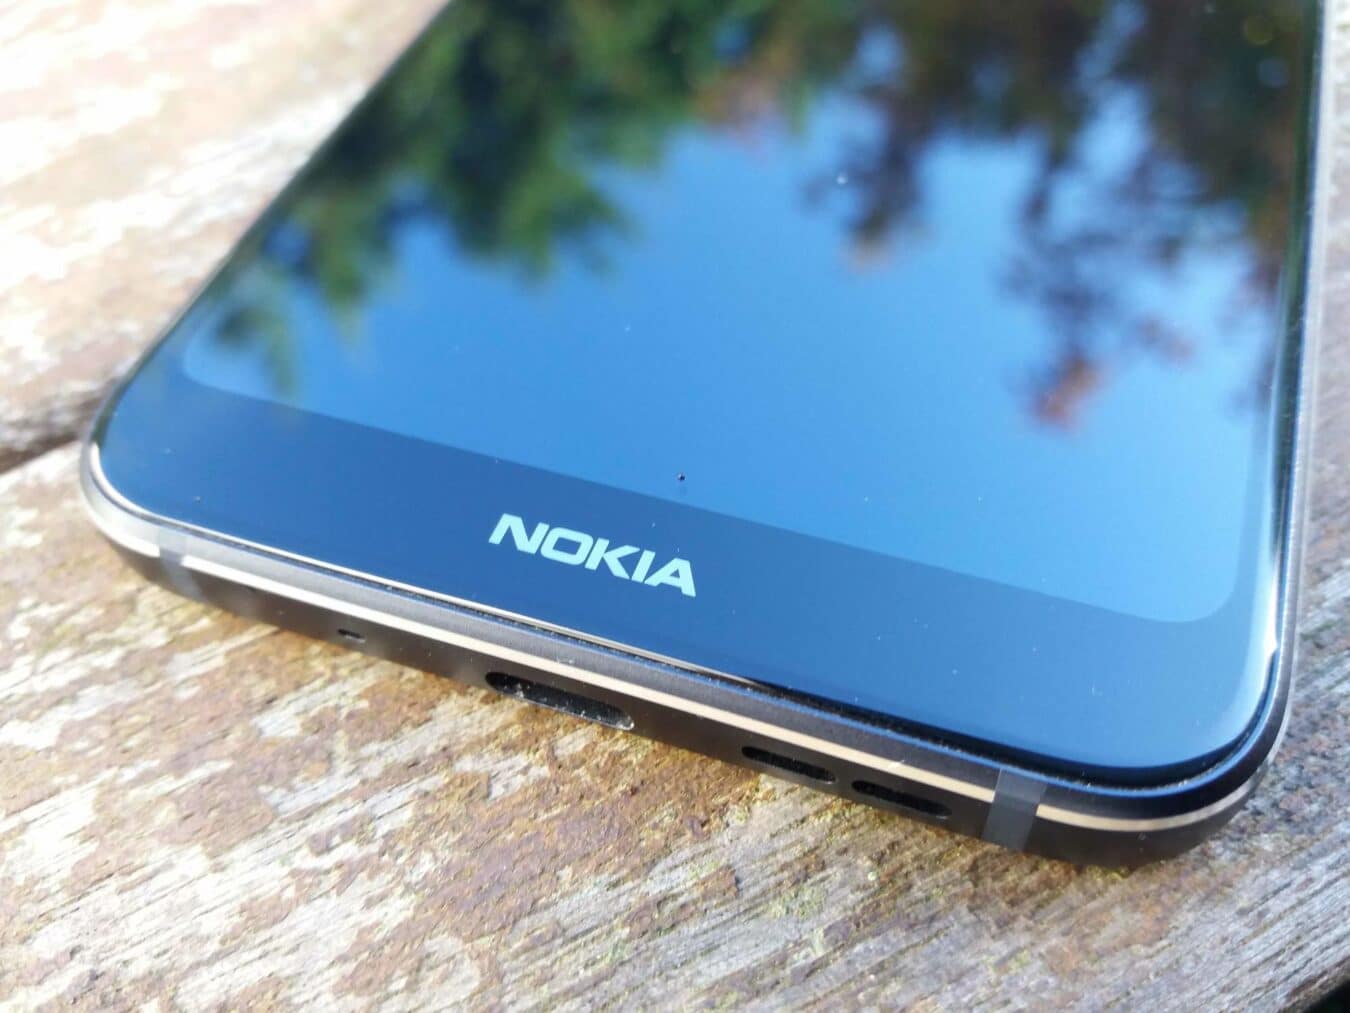 Nokia 7.1 20181102 103244 scaled Test – Nokia 7.1 : Le retour en force de Nokia ? nokia 7.1